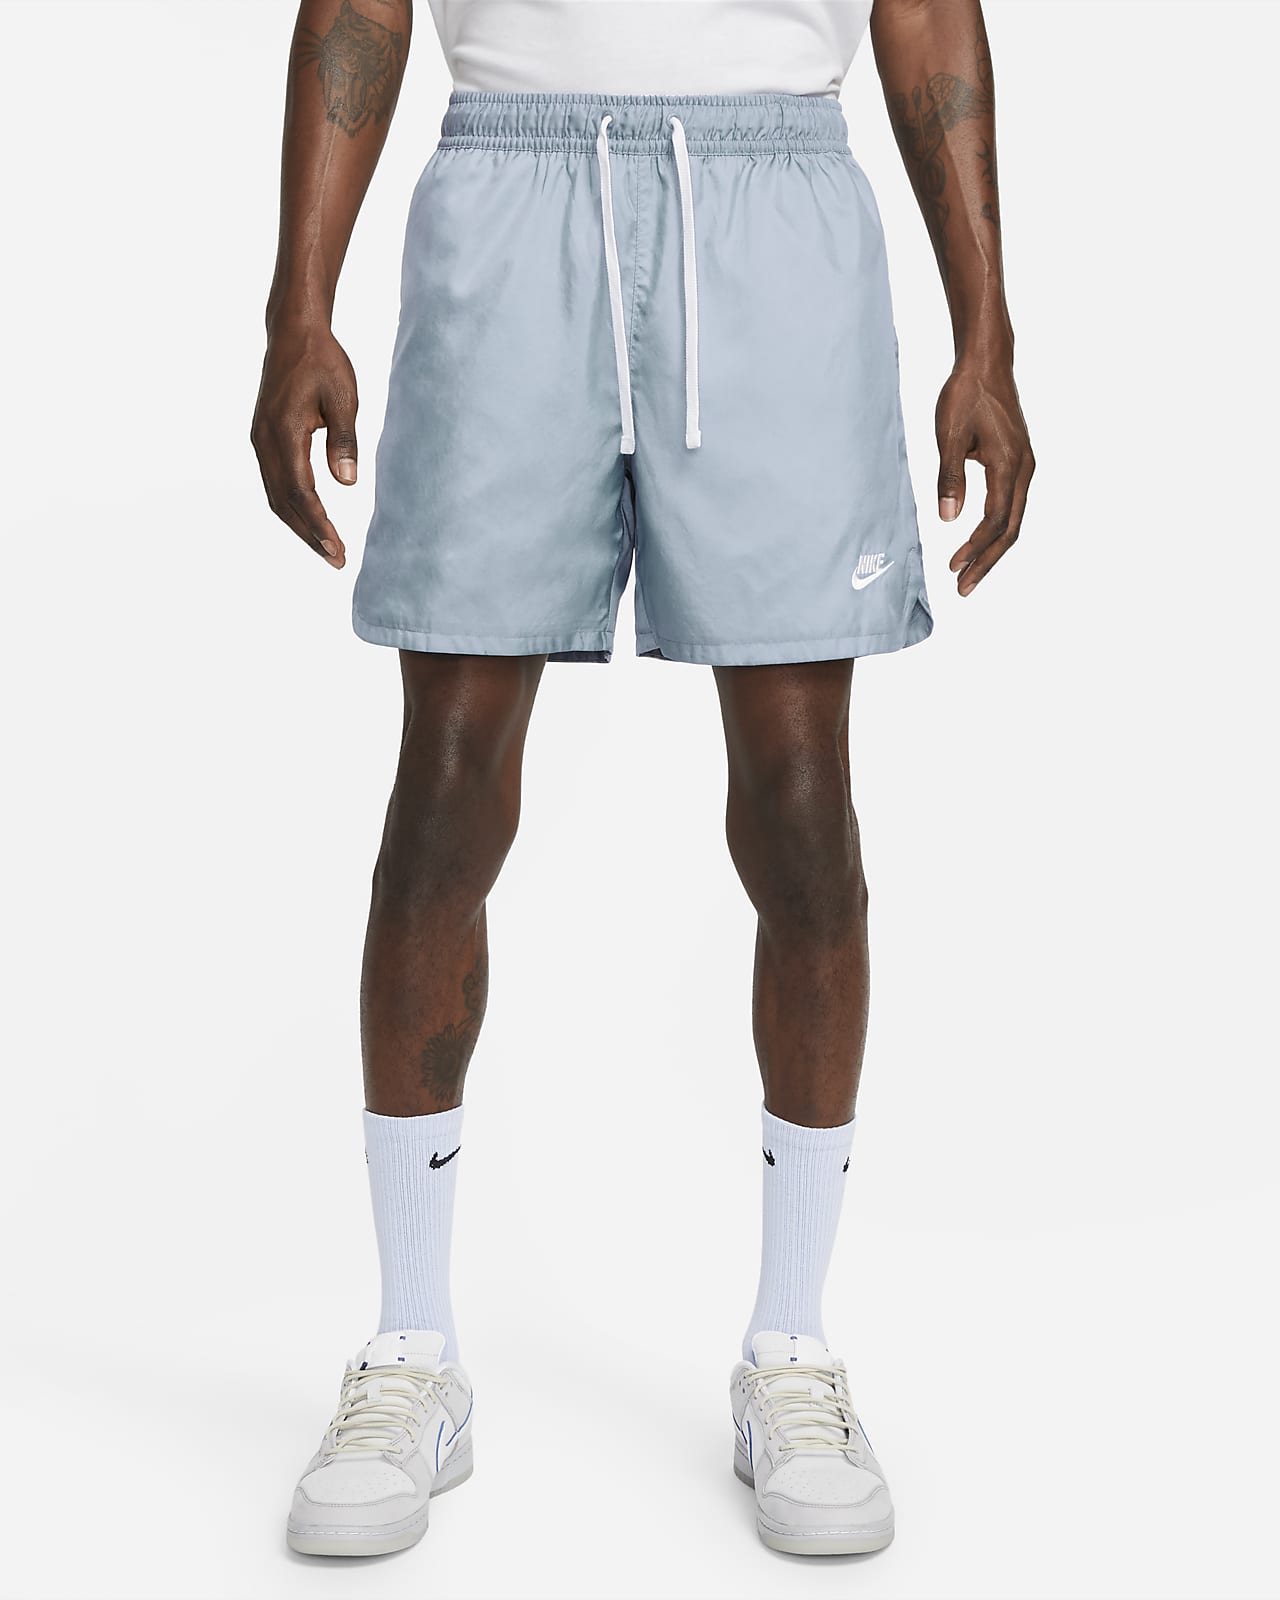 Nike Sportswear Essentials Flow con forro de tejido Woven - Hombre. Nike ES